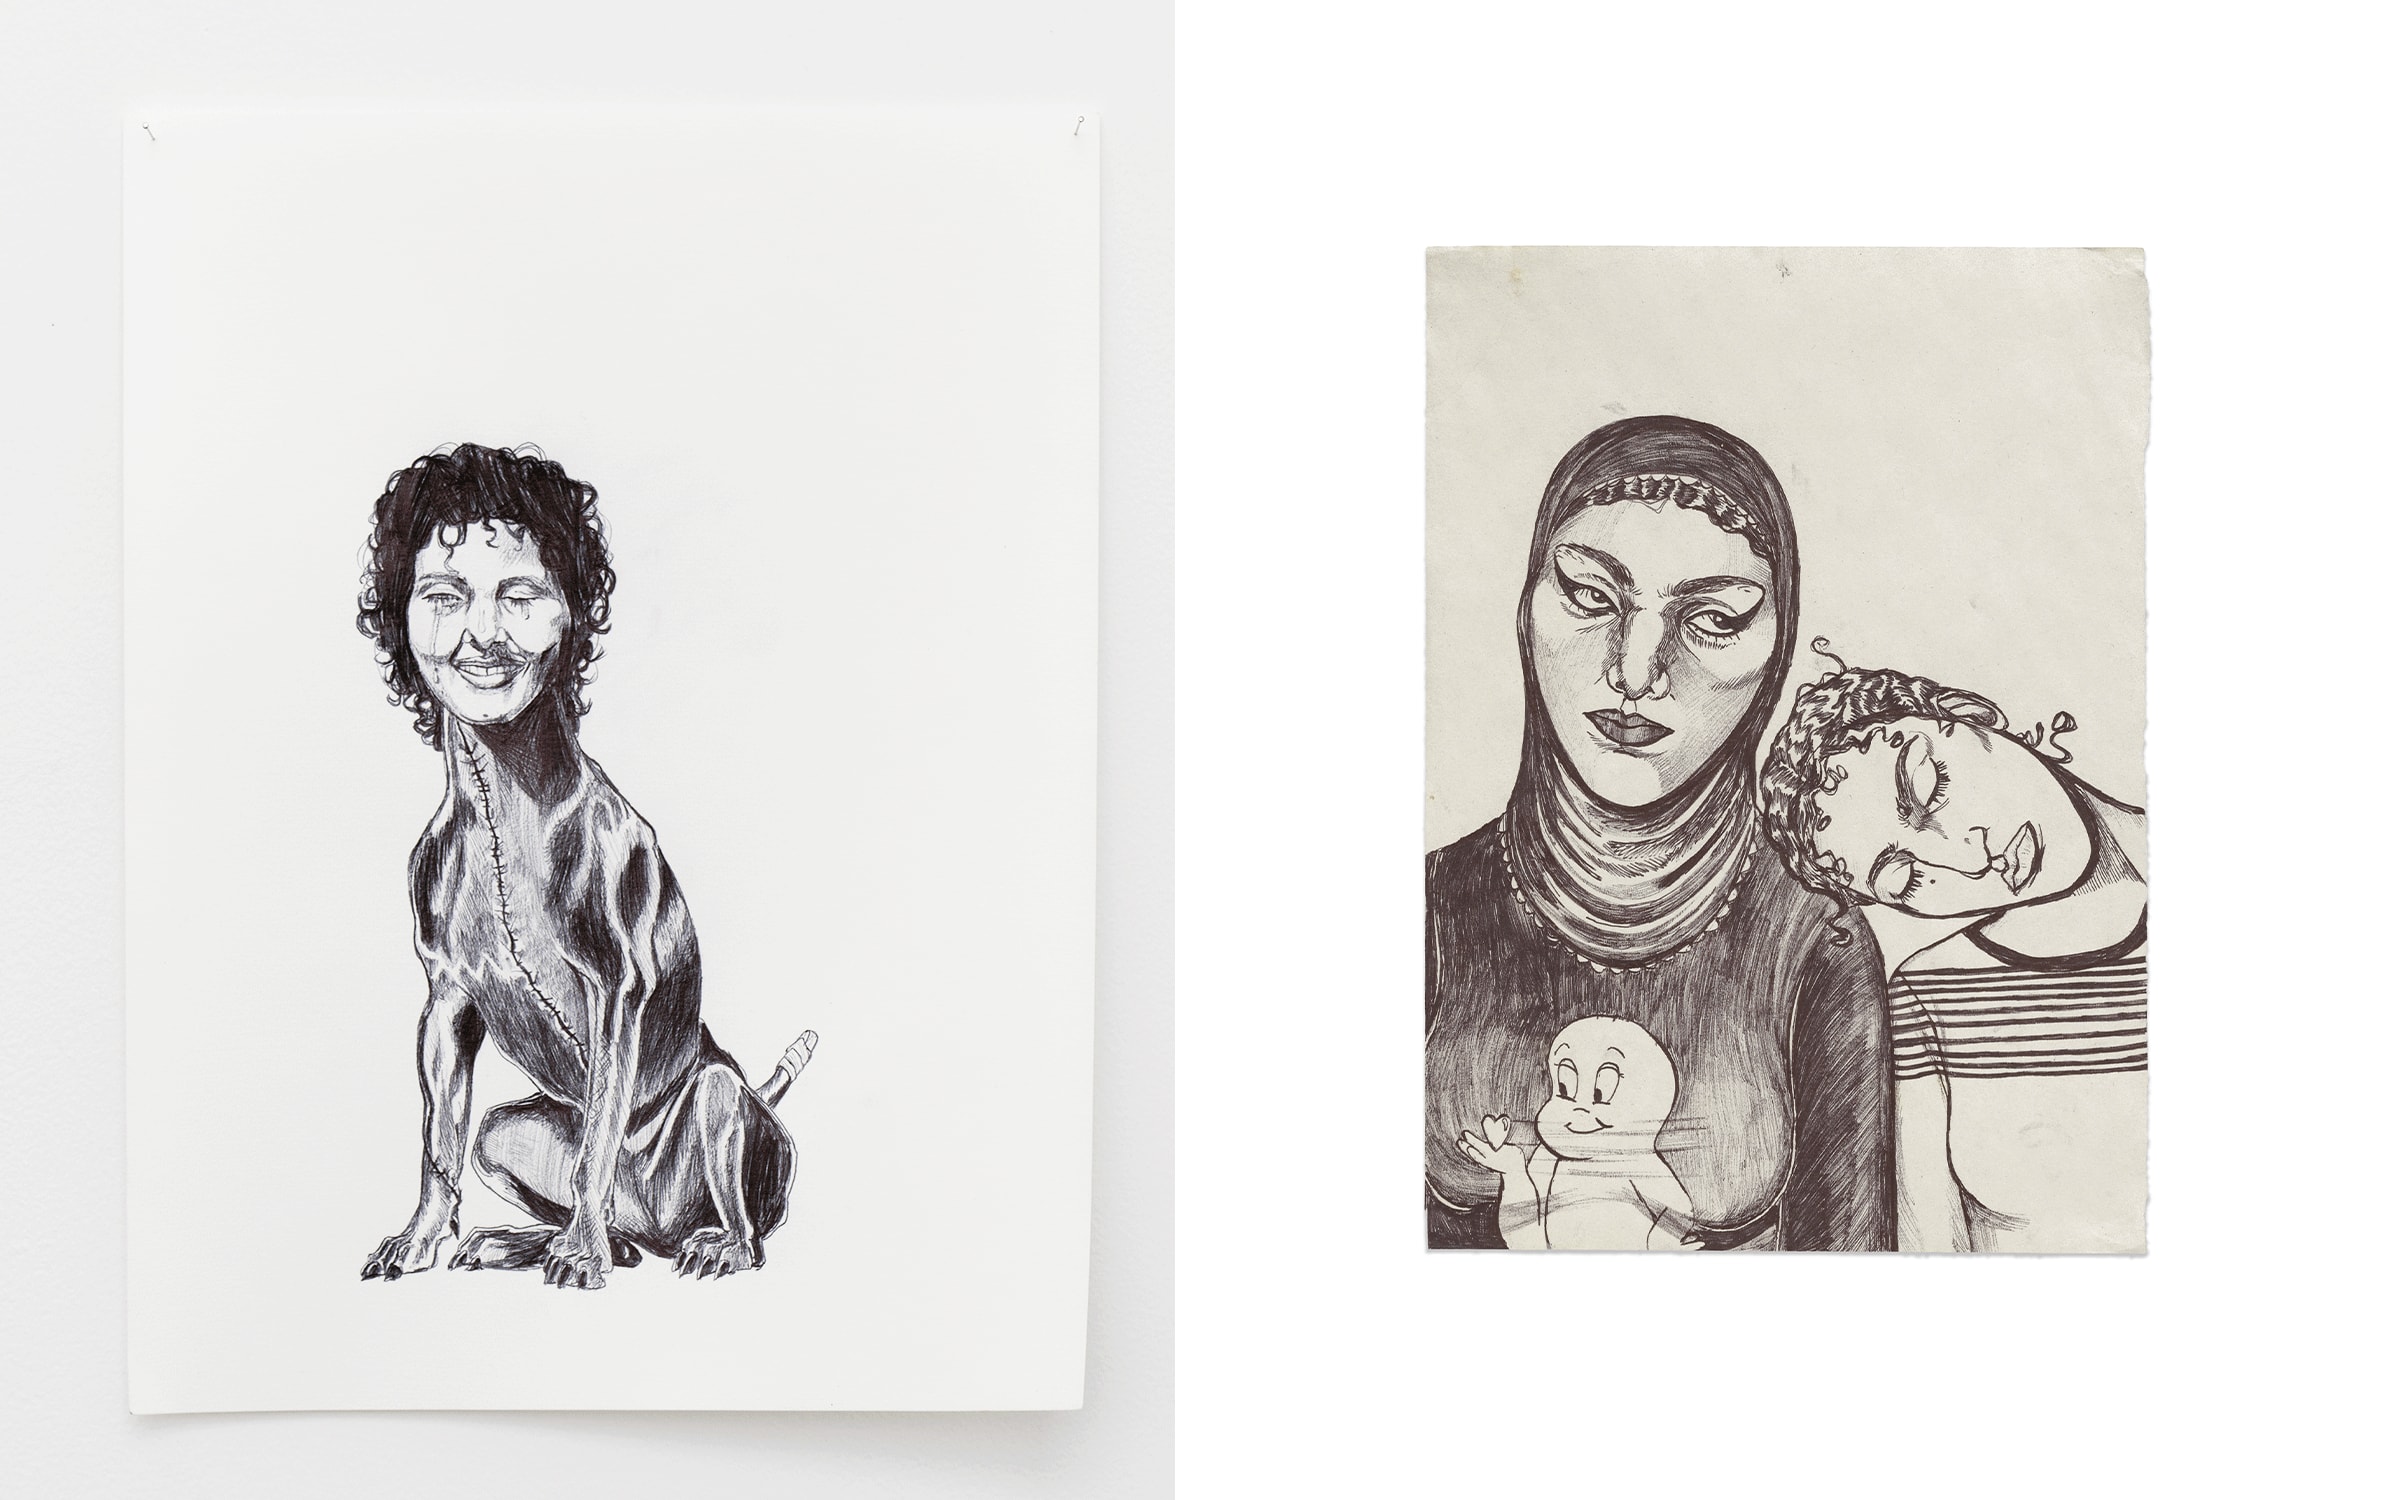 Artworks by Neïla Czermak Ichti. Photograph by Aurélien Mole. Courtesy of Galerie Anne Barrault. Left: Chienne de vie, 2022. Right: sans titre, 2018.